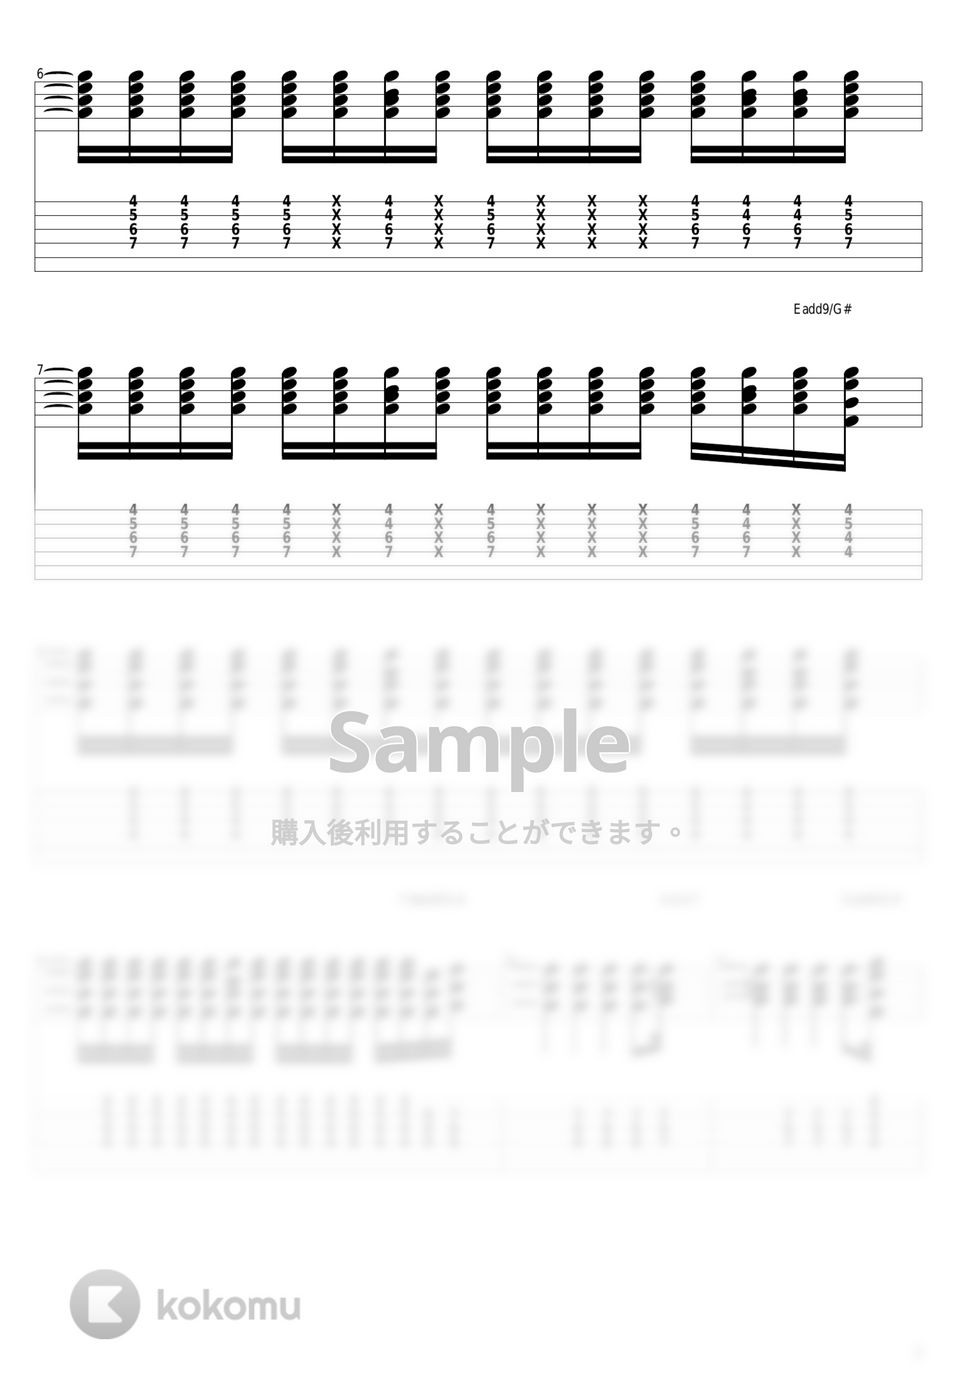 山下達郎 - Sparkle by guitar cover with tab